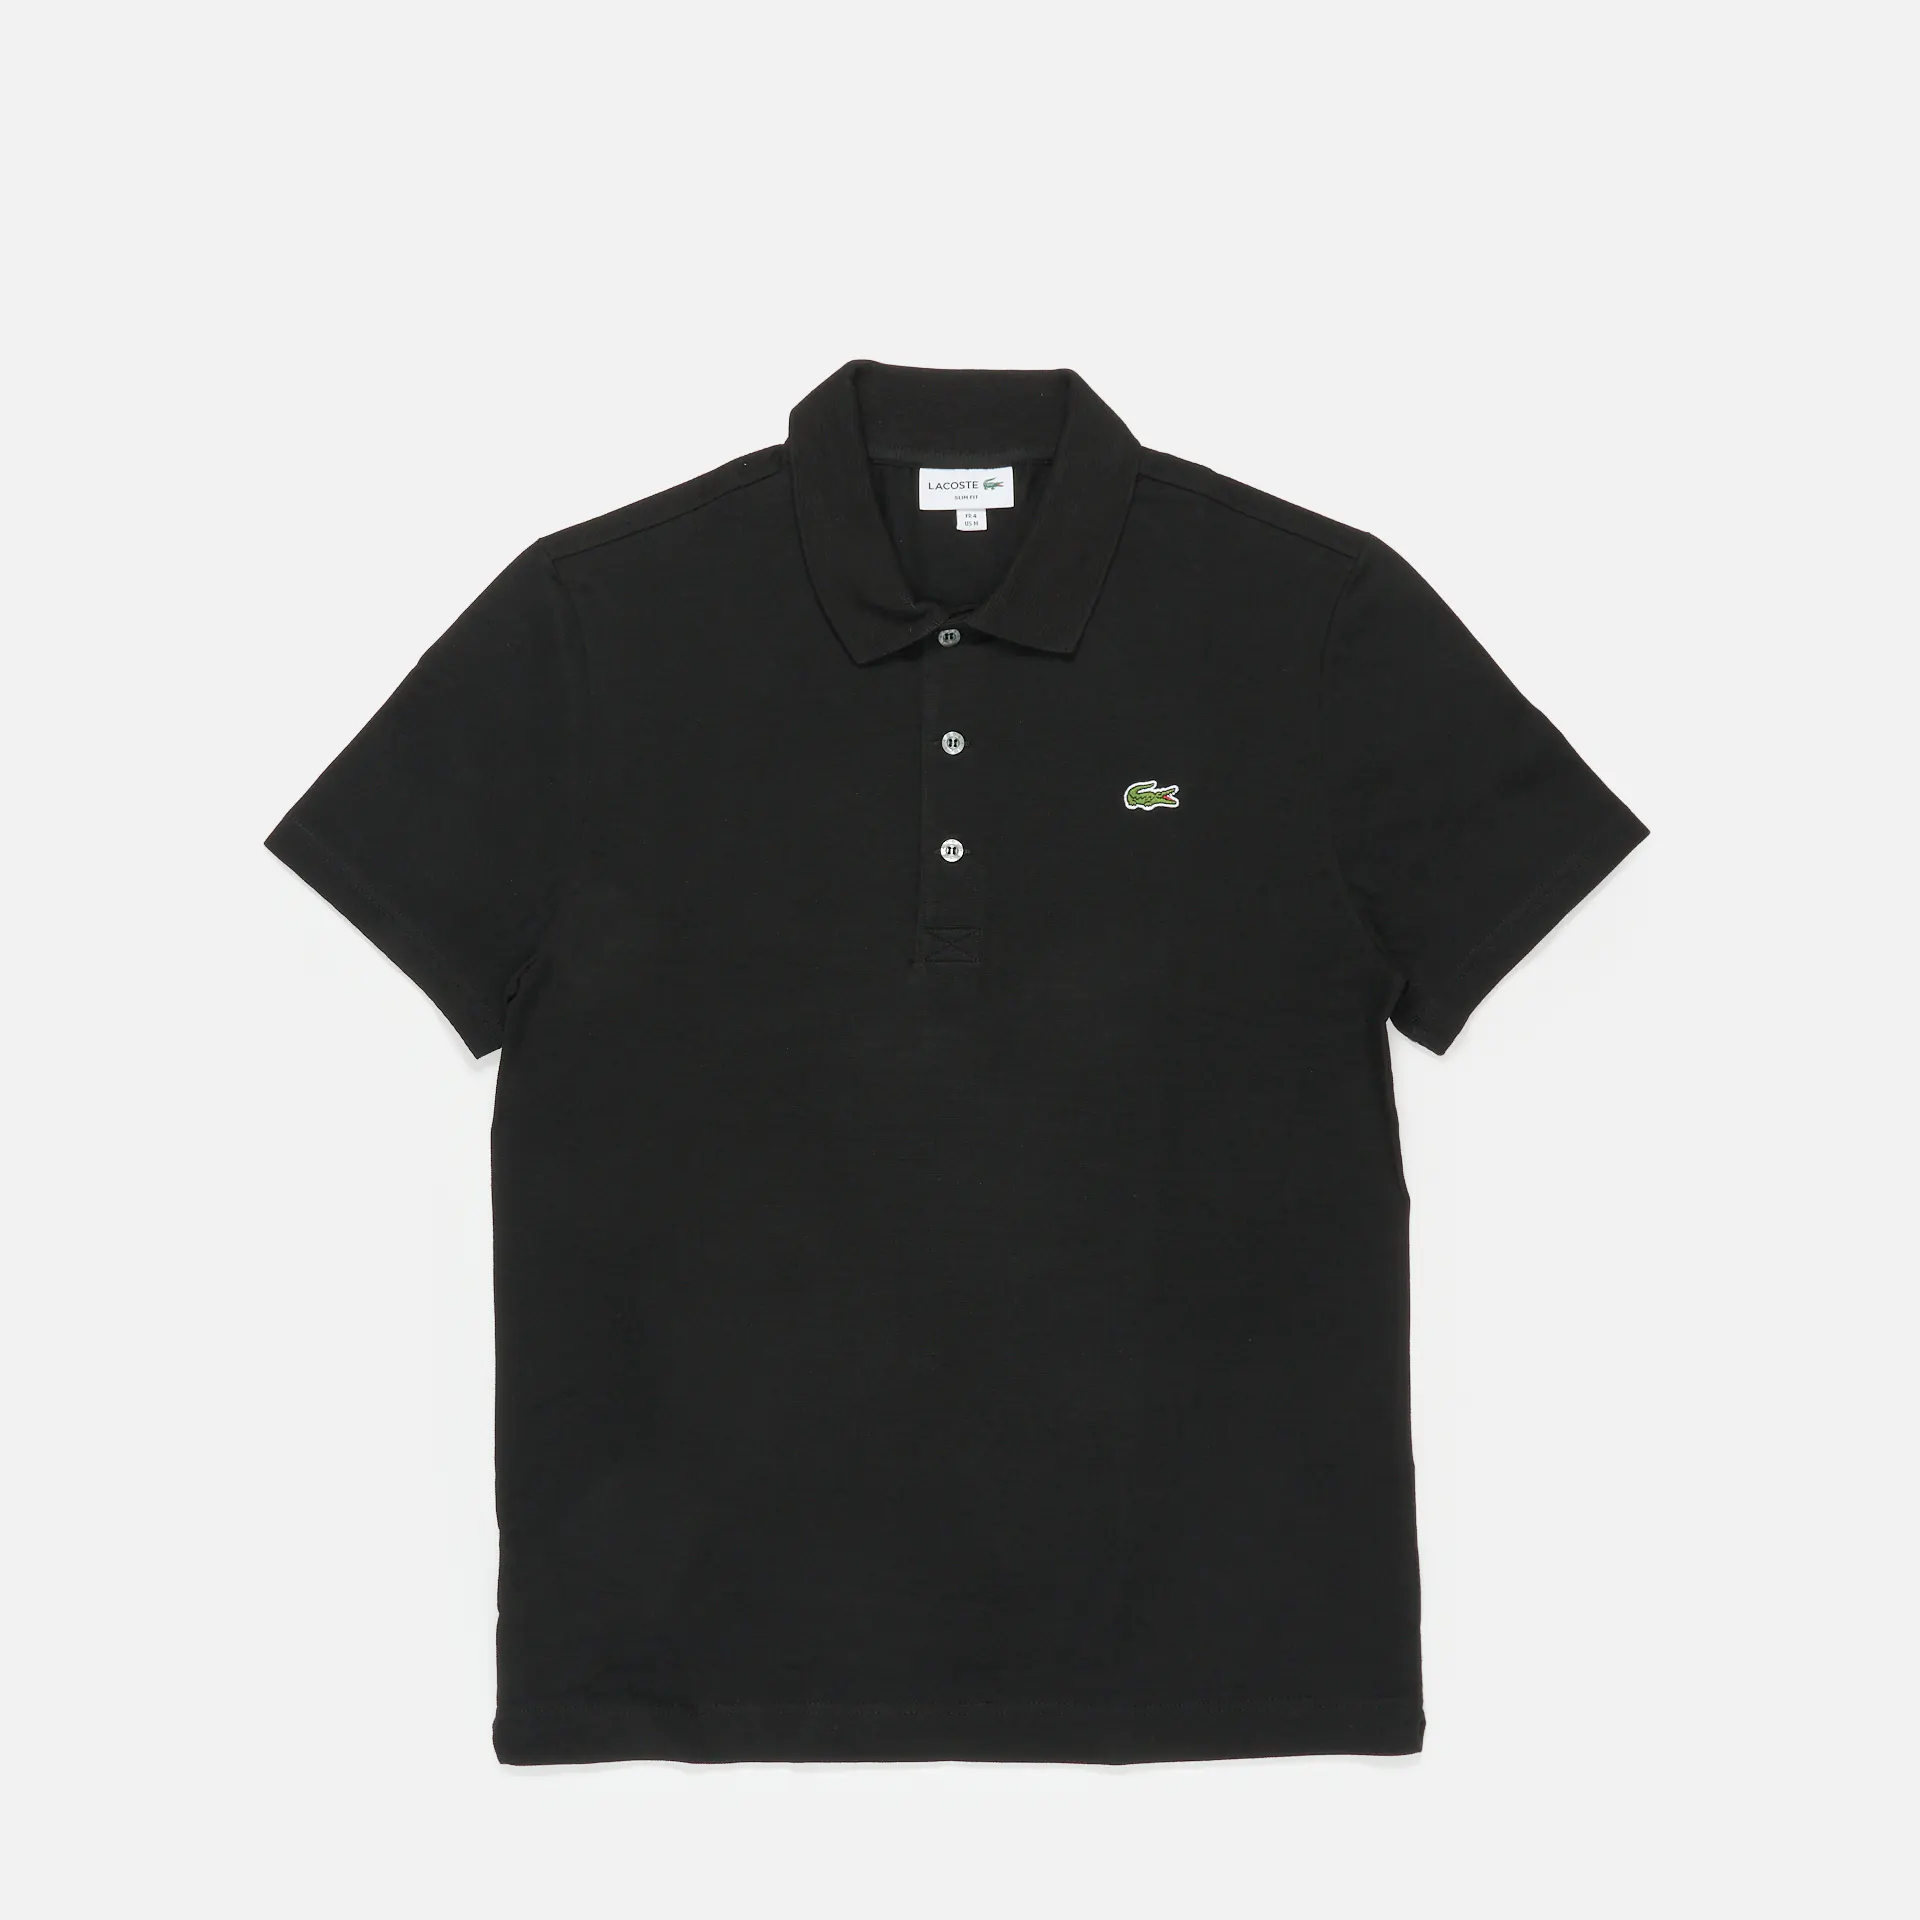 Lacoste Ribbed Collar Tennis Polo Shirt Black